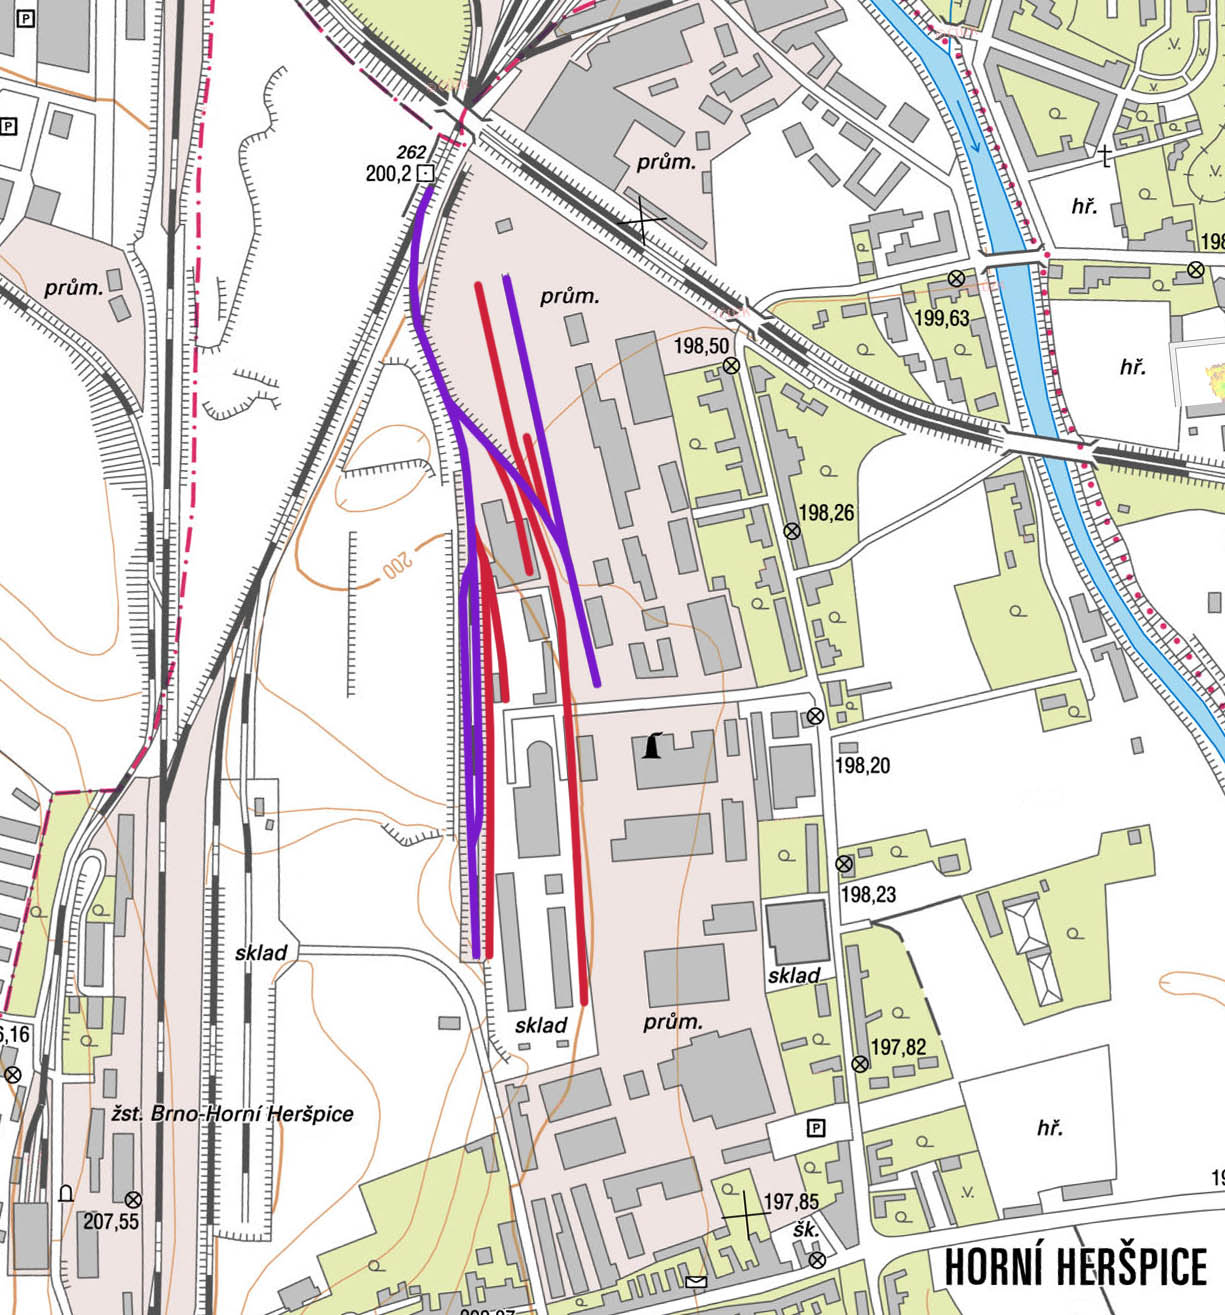 Mapa systému vleček podél Kšírovy ulice v Horních Heršpicích (v roce 2018 vlečka SD Kovošrot, s.r.o.). Fialově jsou vyznačeny koleje provozní v roce 2018, červeně identifikované starší koleje.